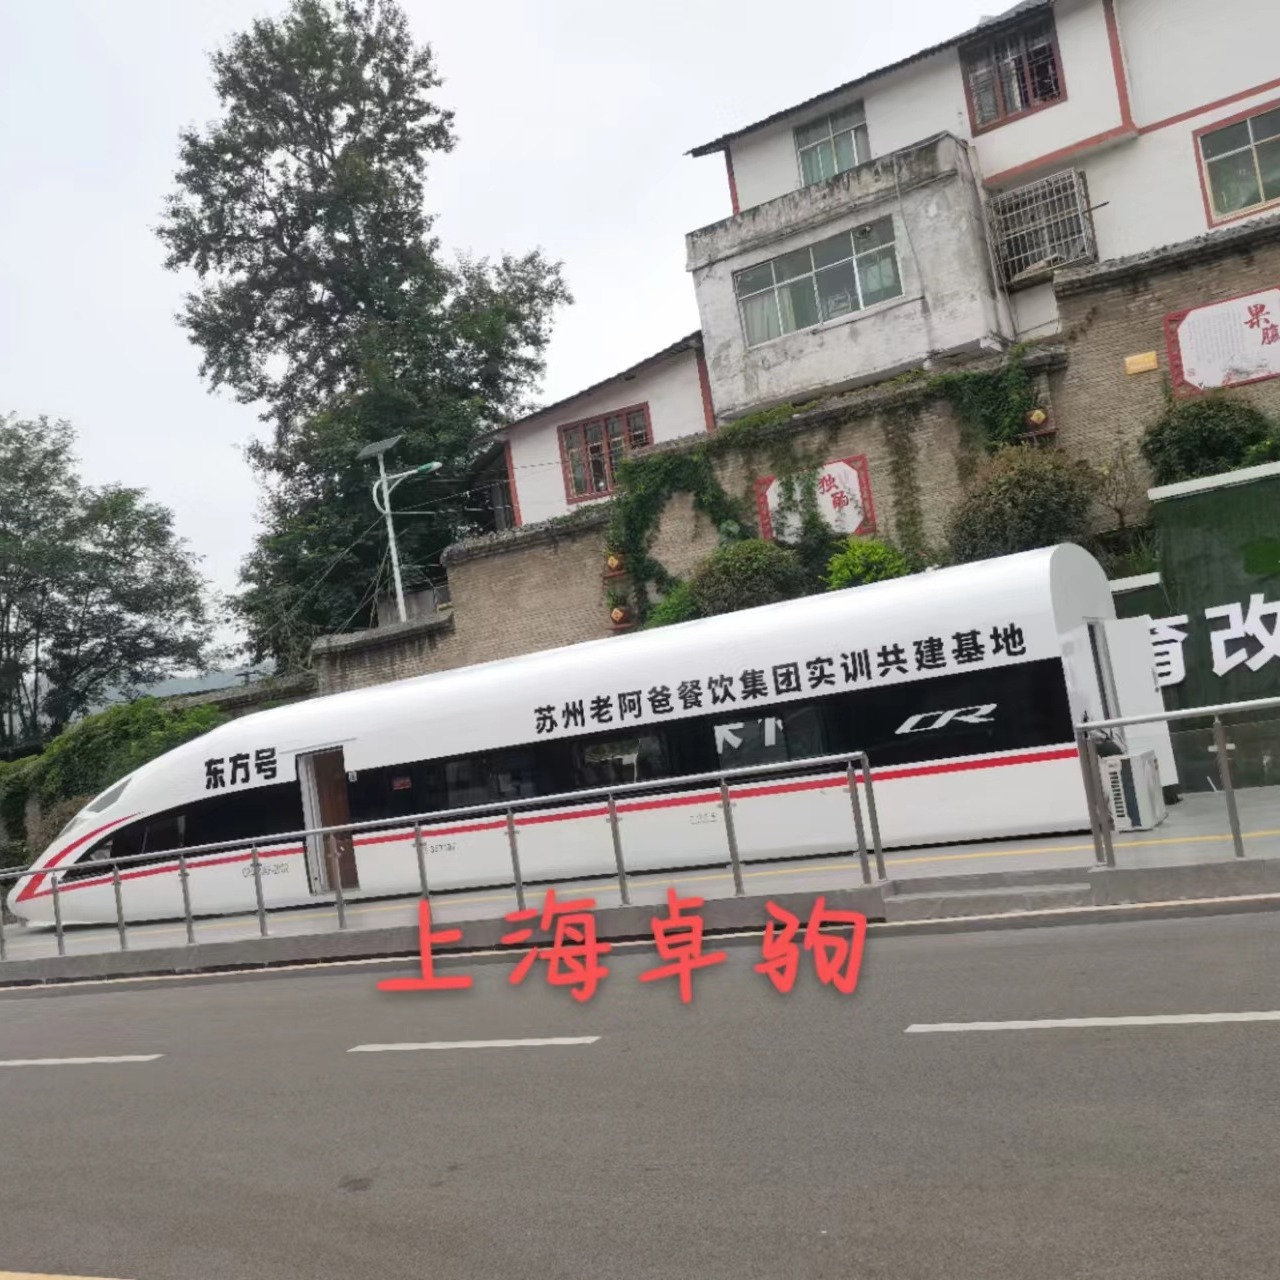 贵州新东方烹饪学院定制18米高铁模拟舱作餐饮实训基地上海卓驹制作图片